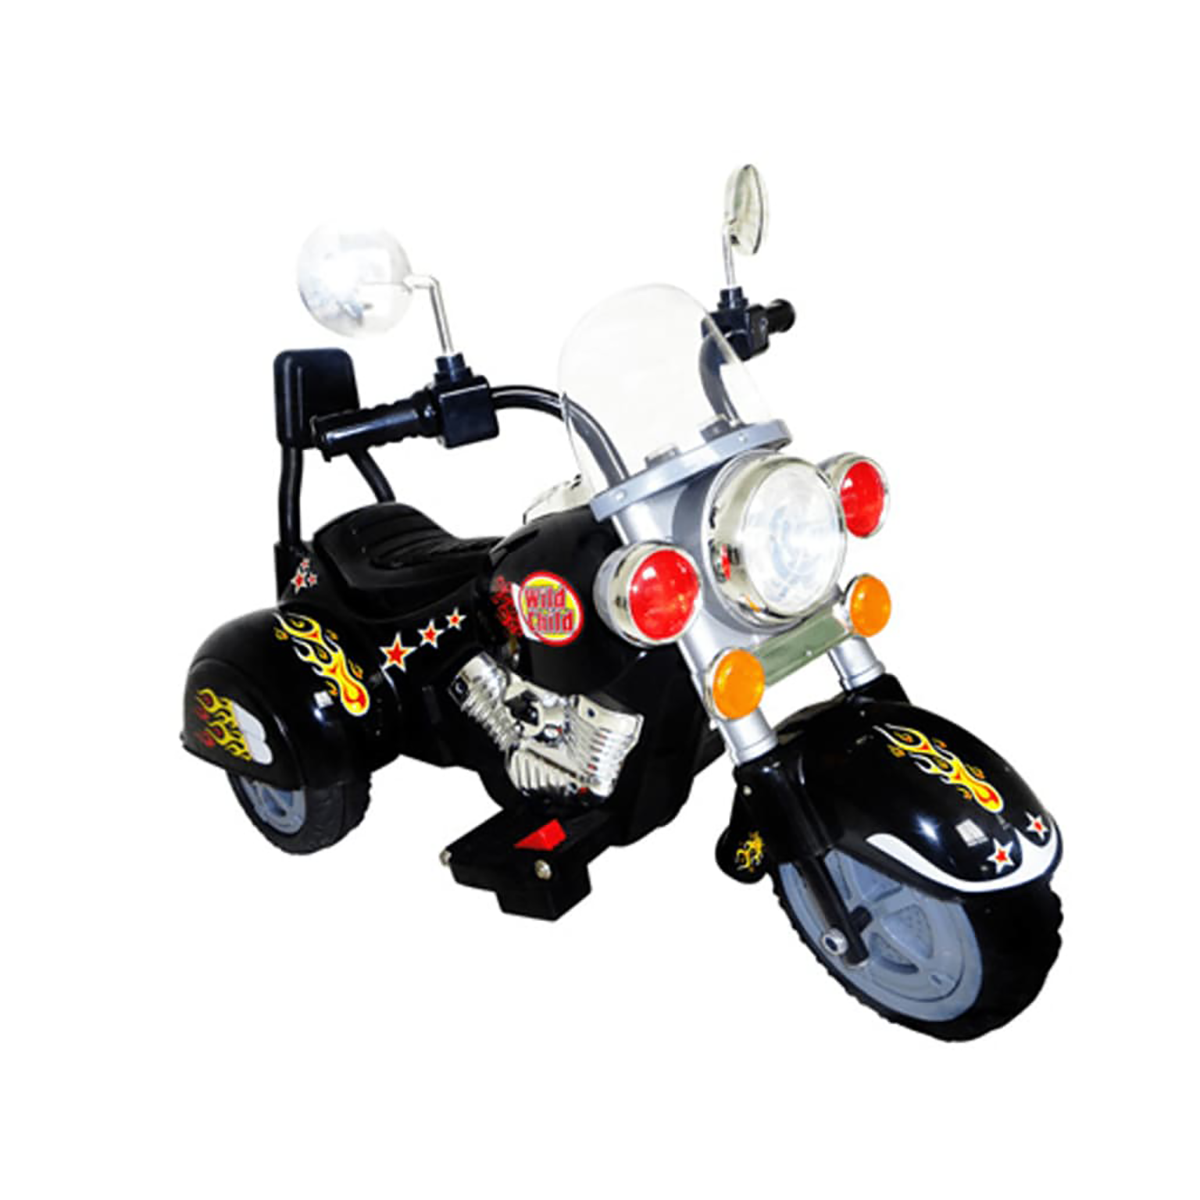 VIDAXL Kinder Chopper Kinderfahrzeug Motorrad